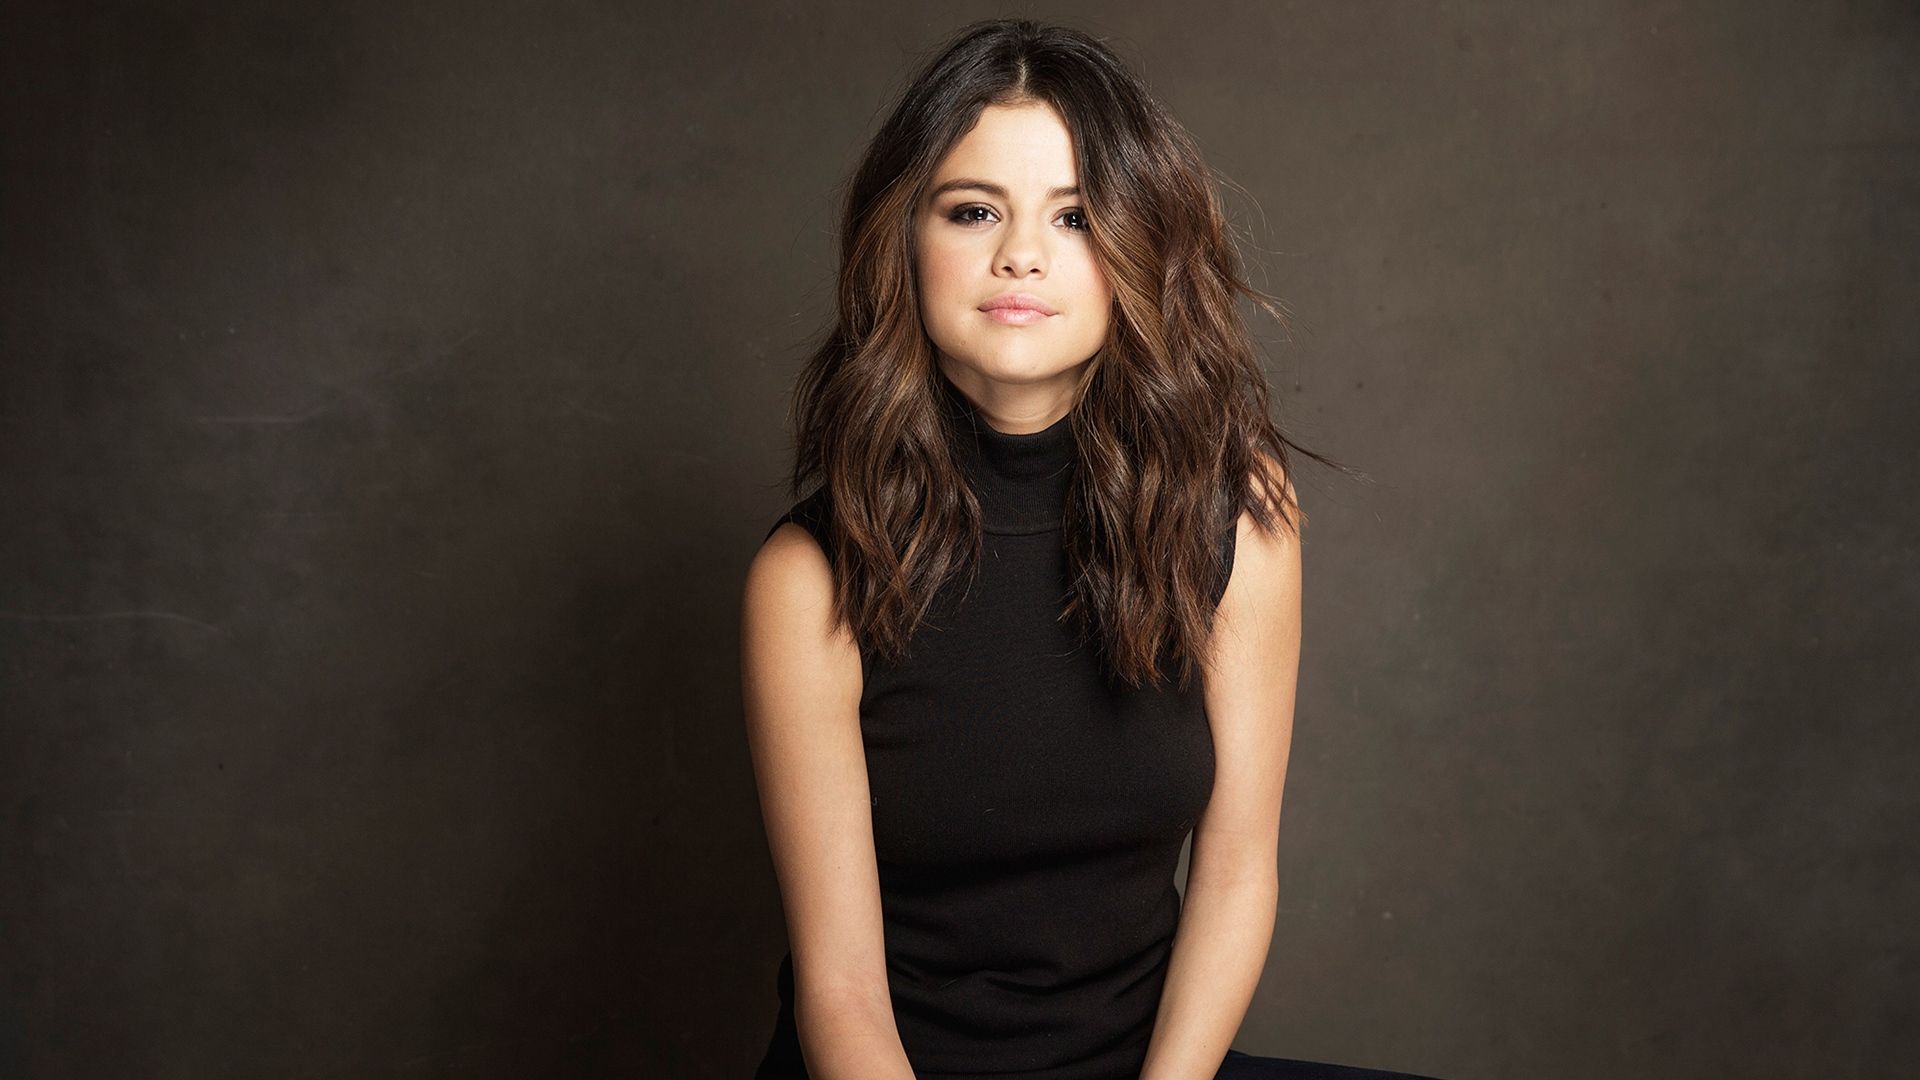 Selena Gomez defiende a Hailey Bieber de amenazas en redes sociales